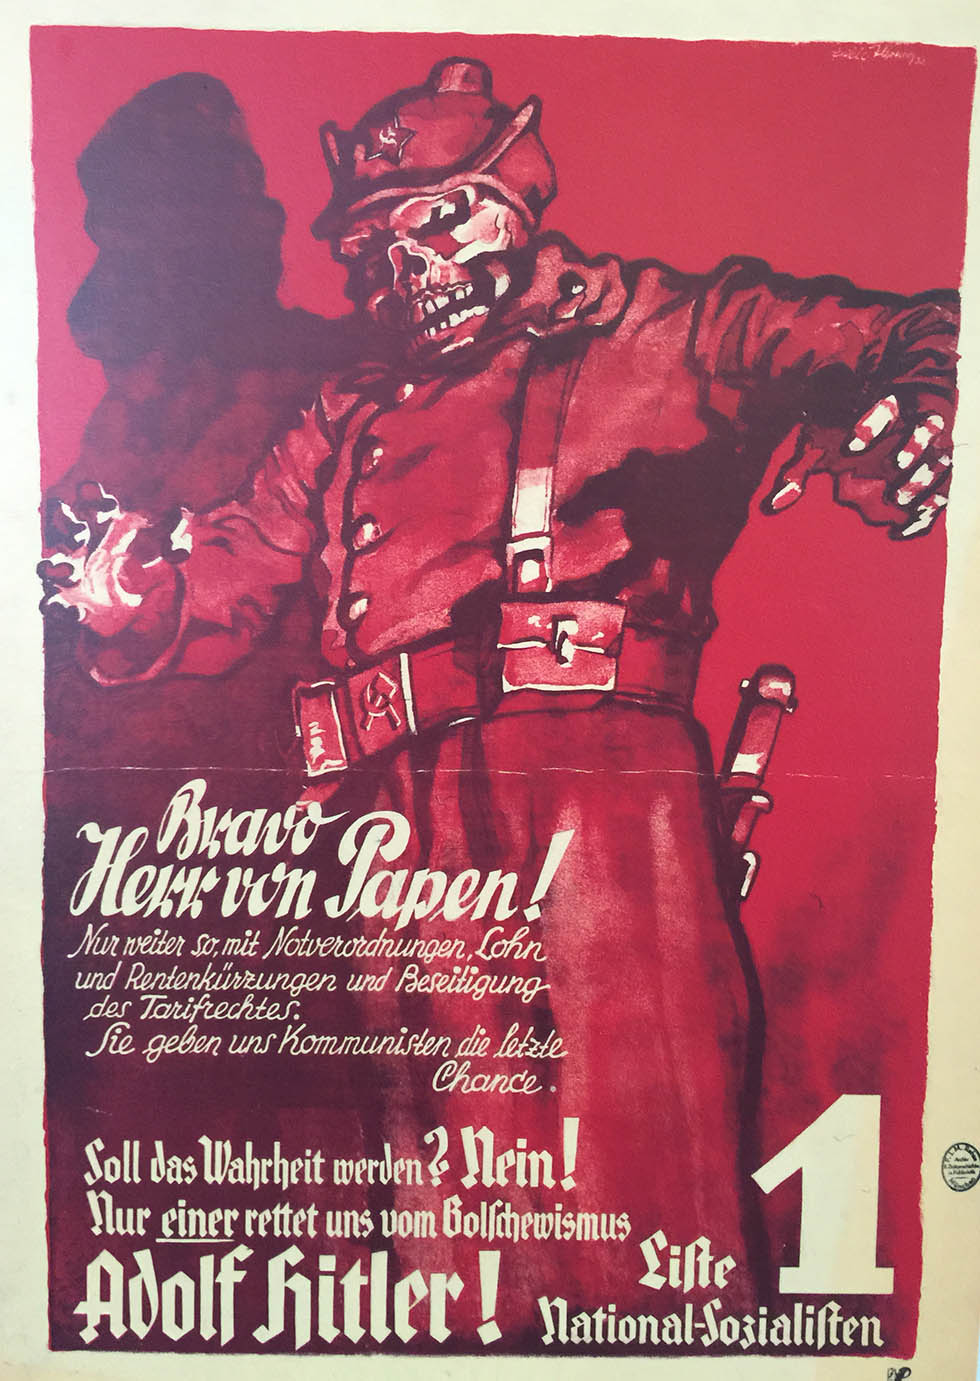 Herr Von Pappen Propoganda poster World War II Nazi Germany